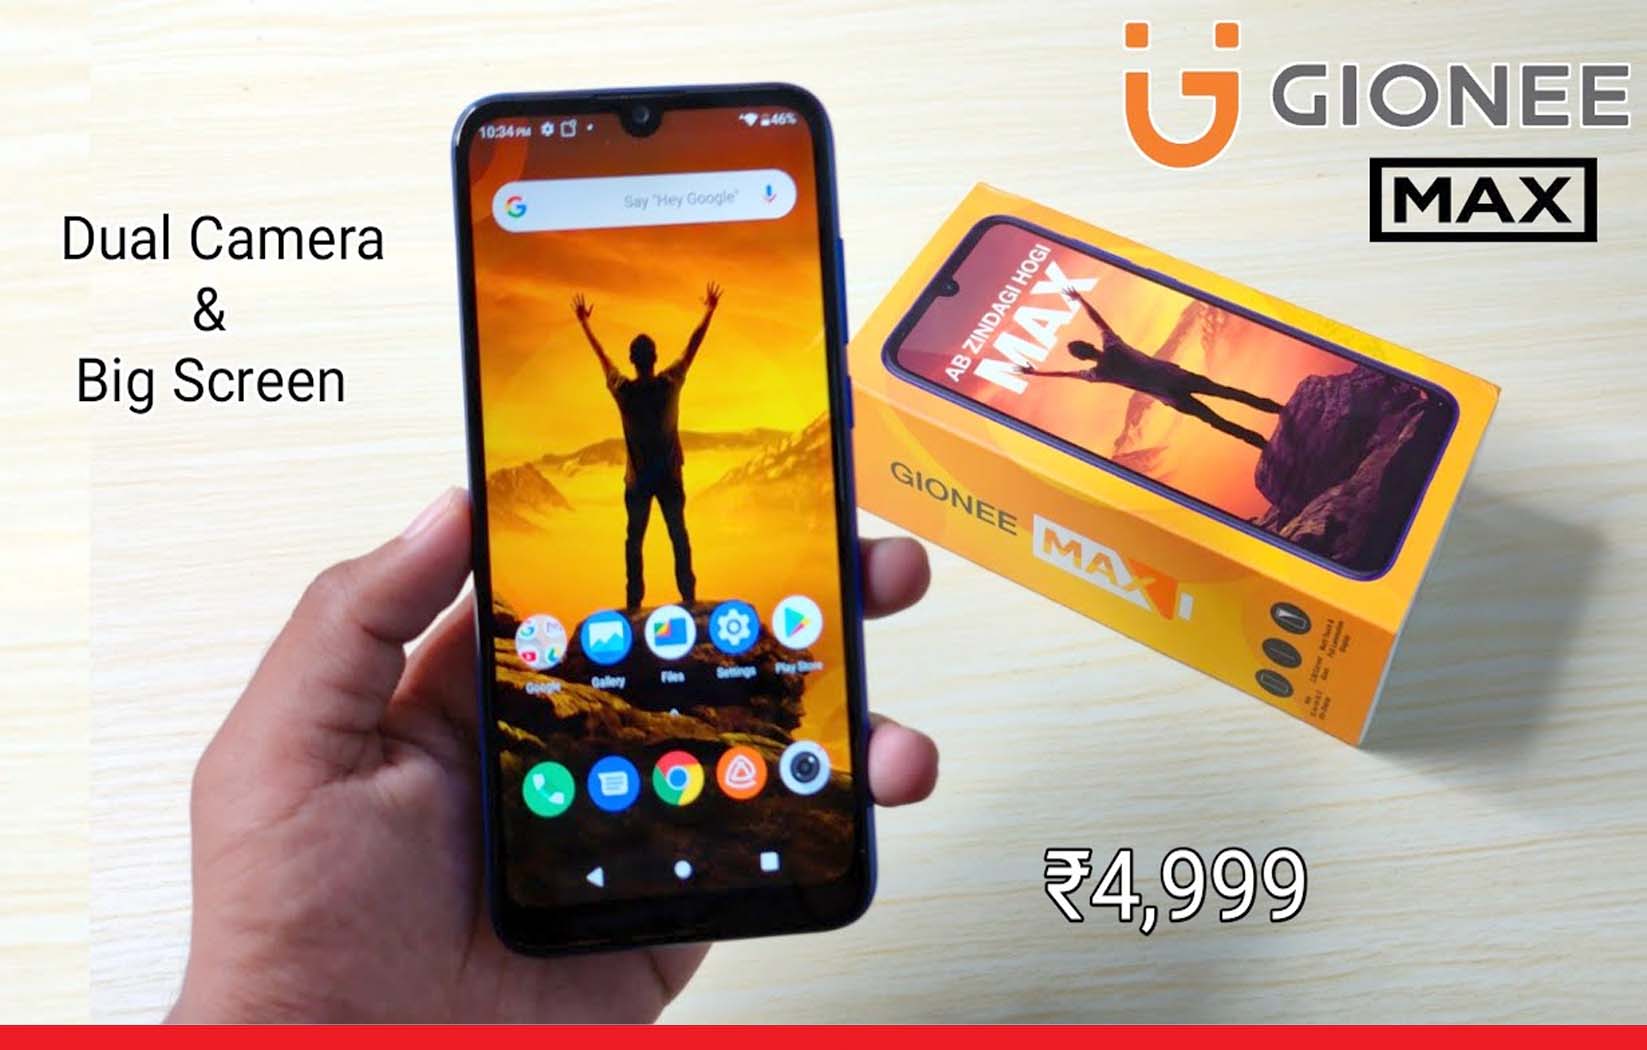 6 हज़ार रुपये से भी सस्ता हो गया जियोनी मैक्स का शानदार स्मार्टफोन